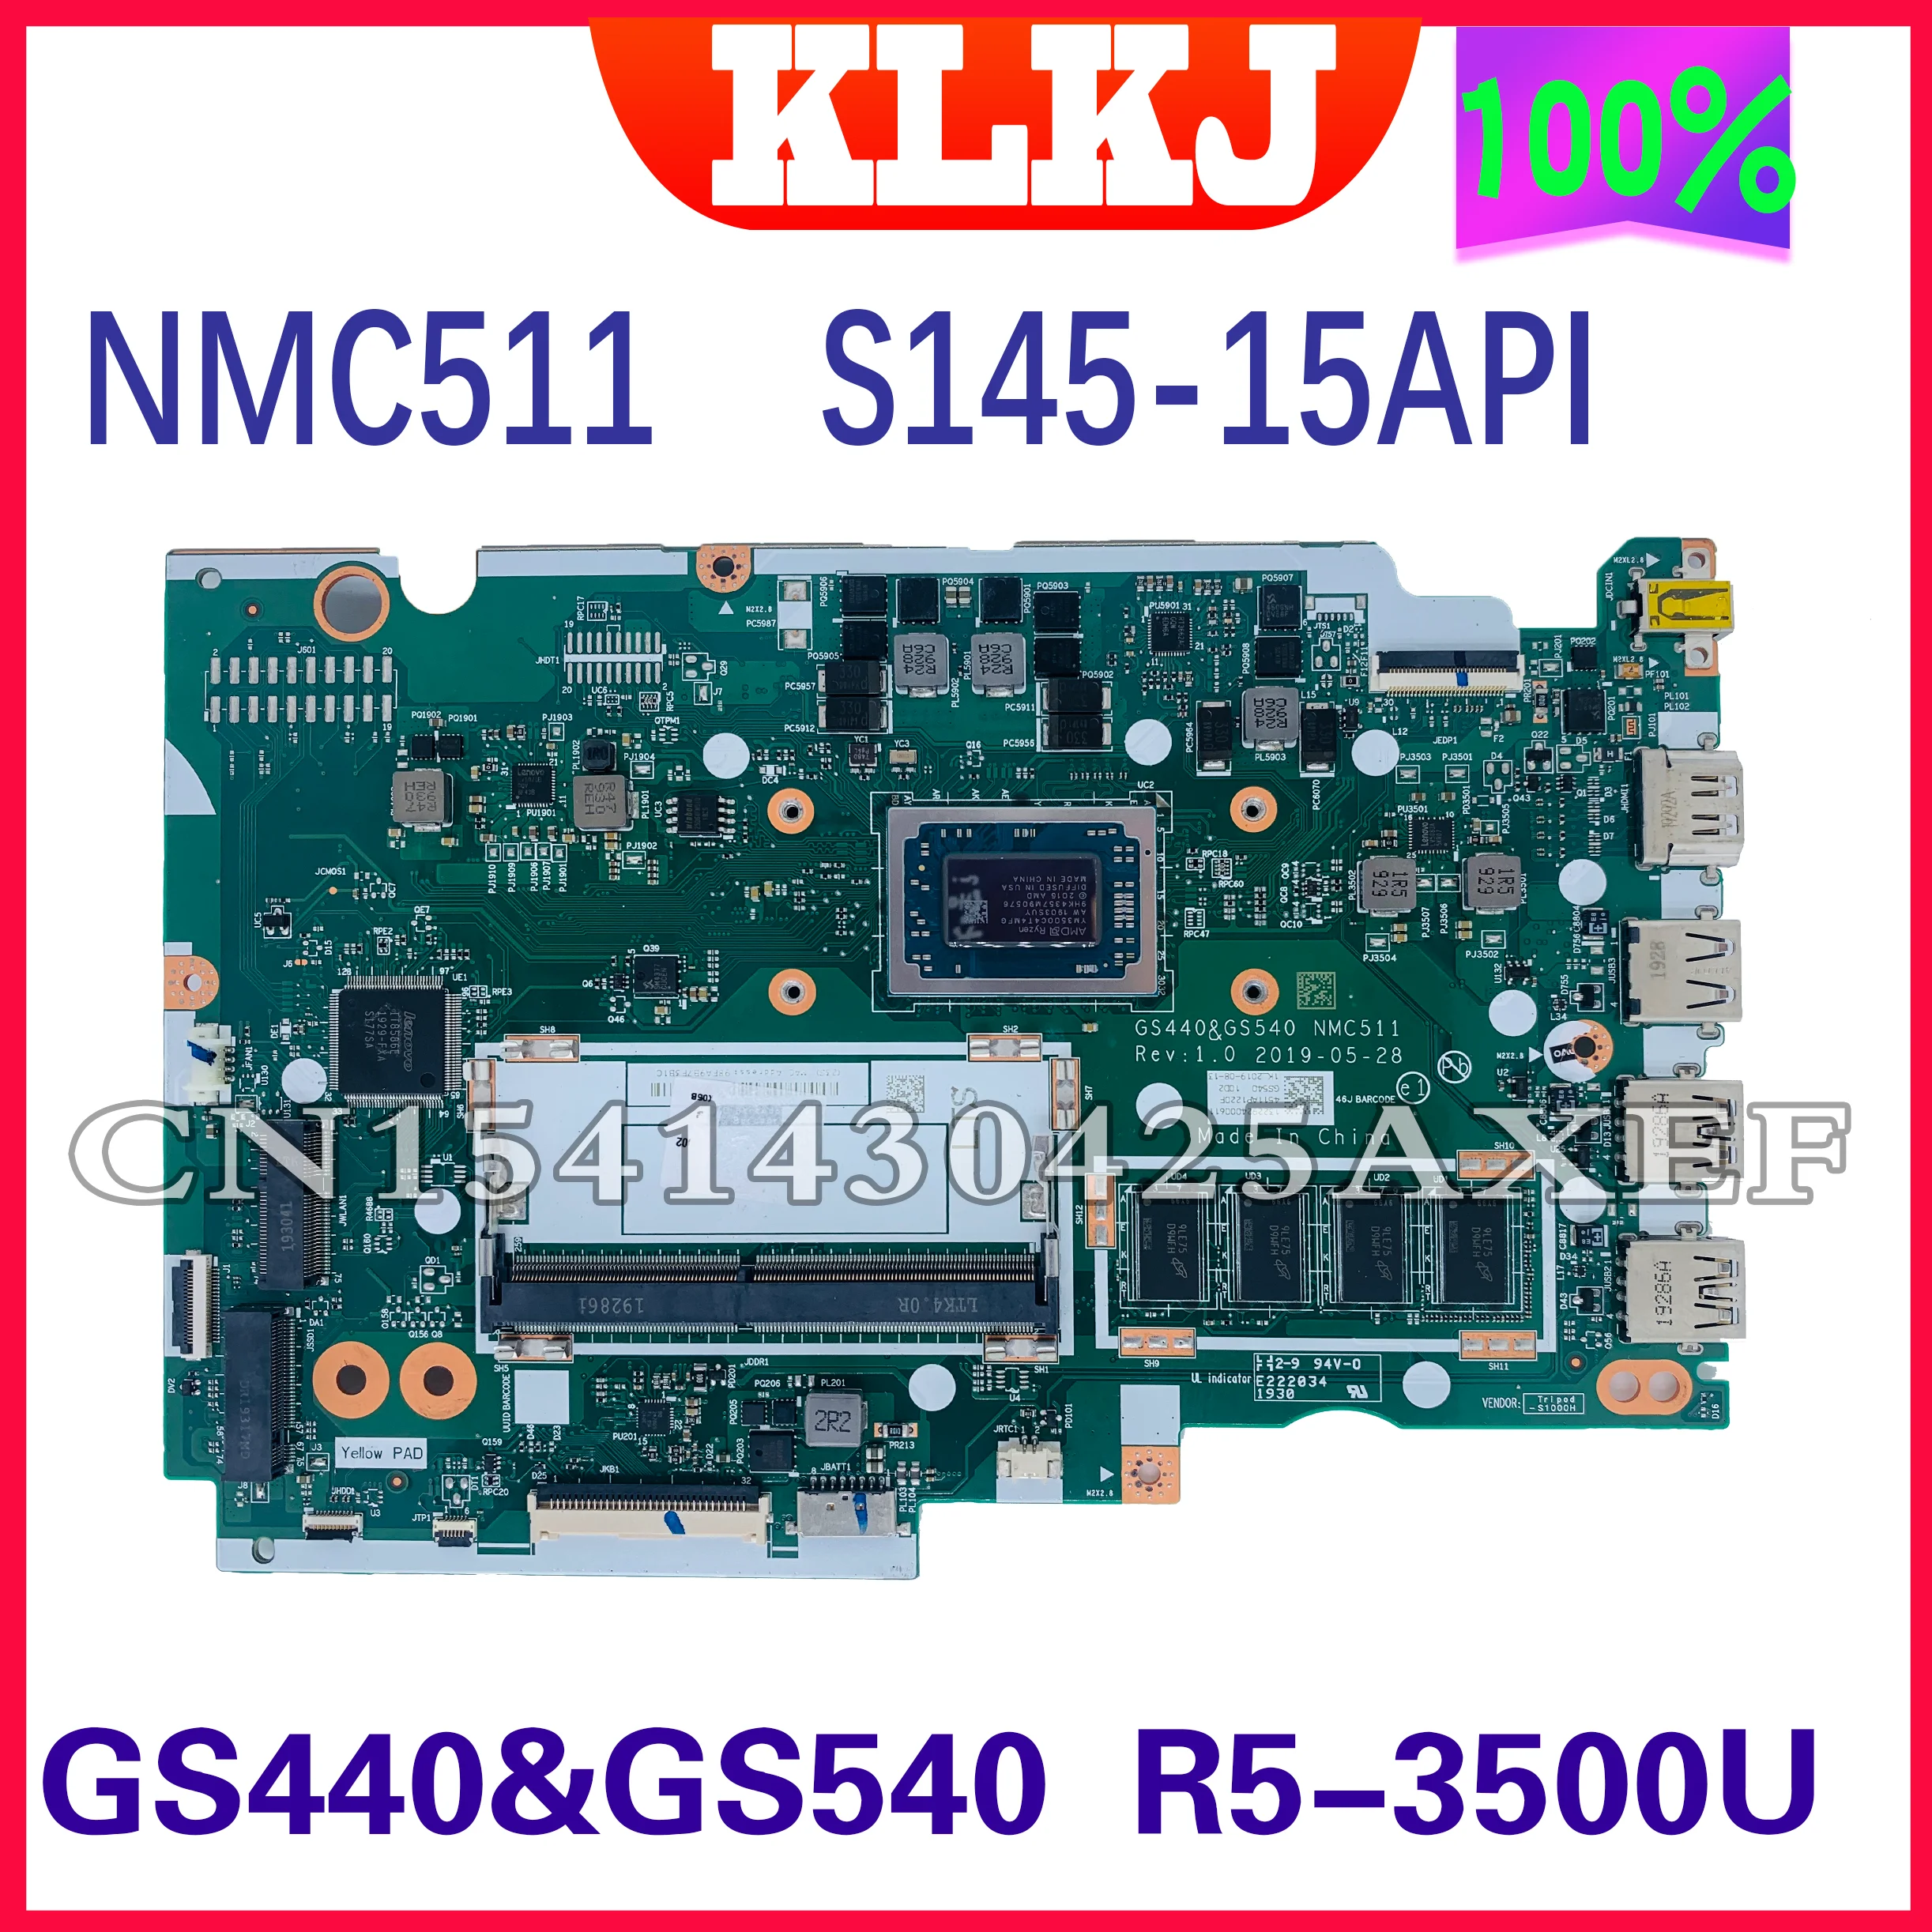 

KLKJ GS440 & GS540 NMC511 материнская плата для ноутбука Lenovo Ideapad S145-15API оригинальная материнская плата 4GB-RAM Ryzen 5 3500U (R5-3500U)